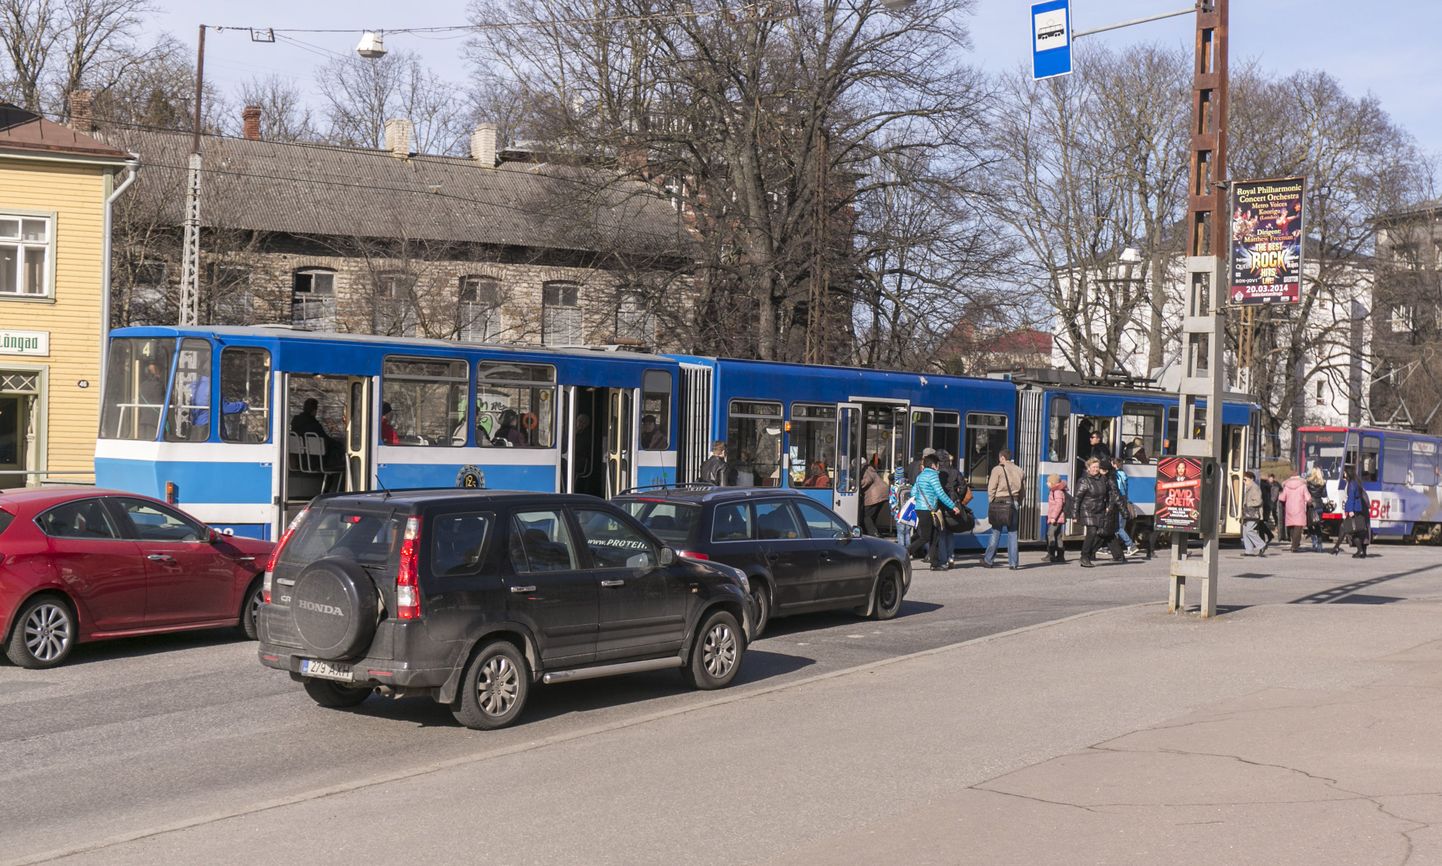 Tallinna trammiliiklust ootab eeloleval aastal ees muutus - Tallinna saabuvad 20 uut trammi. Ühtlasi läheb aprillist täieliku renoveerimise alla Pärnu maantee.